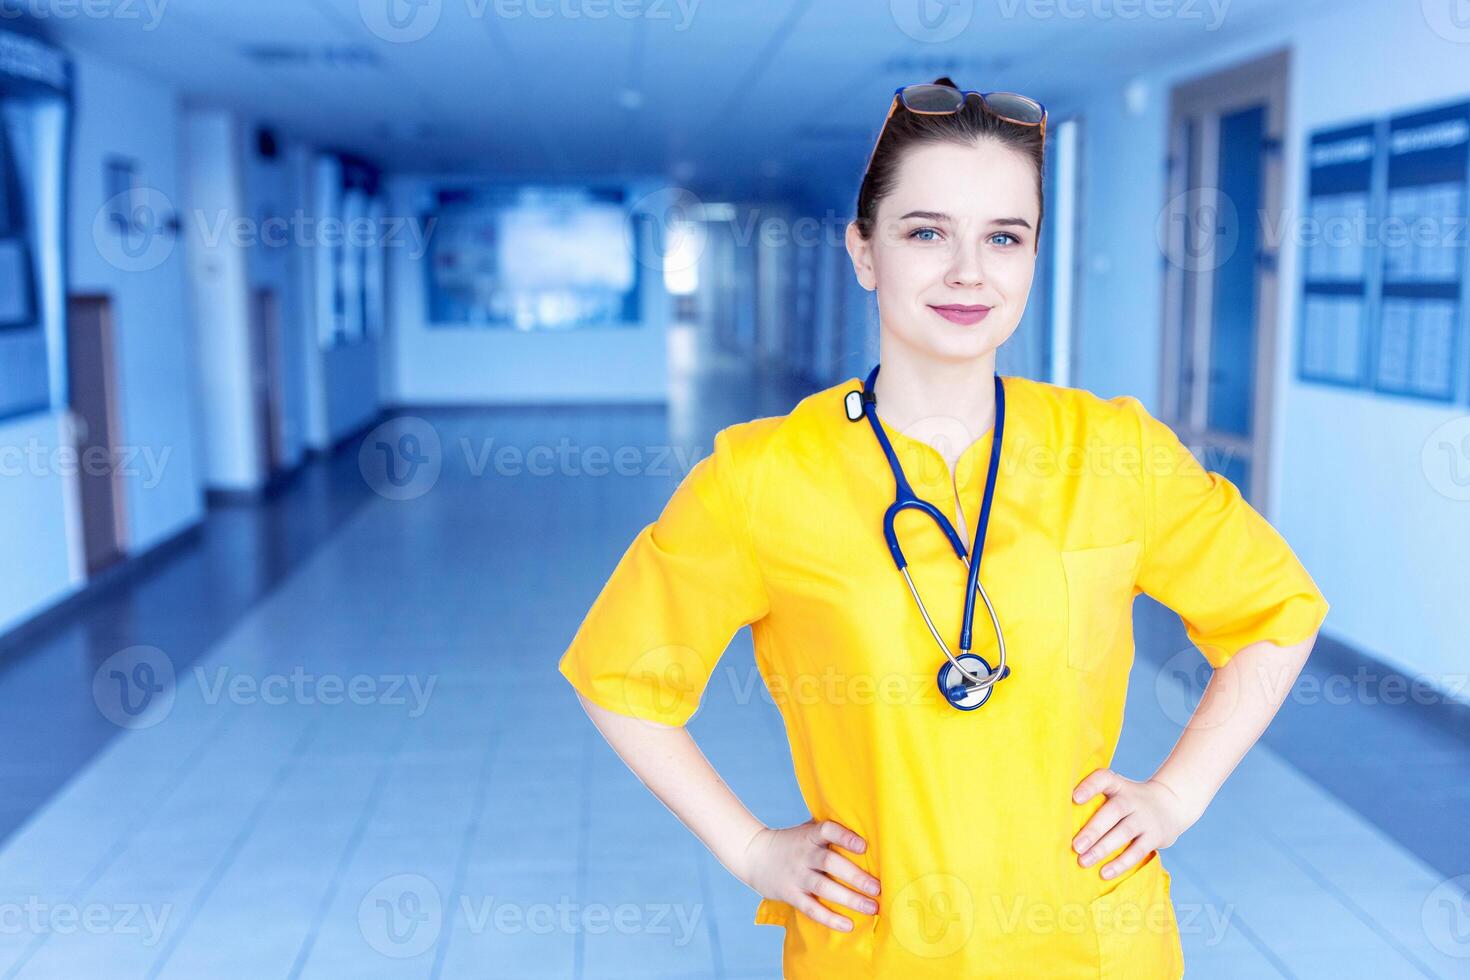 dokter in geel uniform in de ziekenhuis. concept van een gelukkig mooi dokter meisje met een glimlach foto